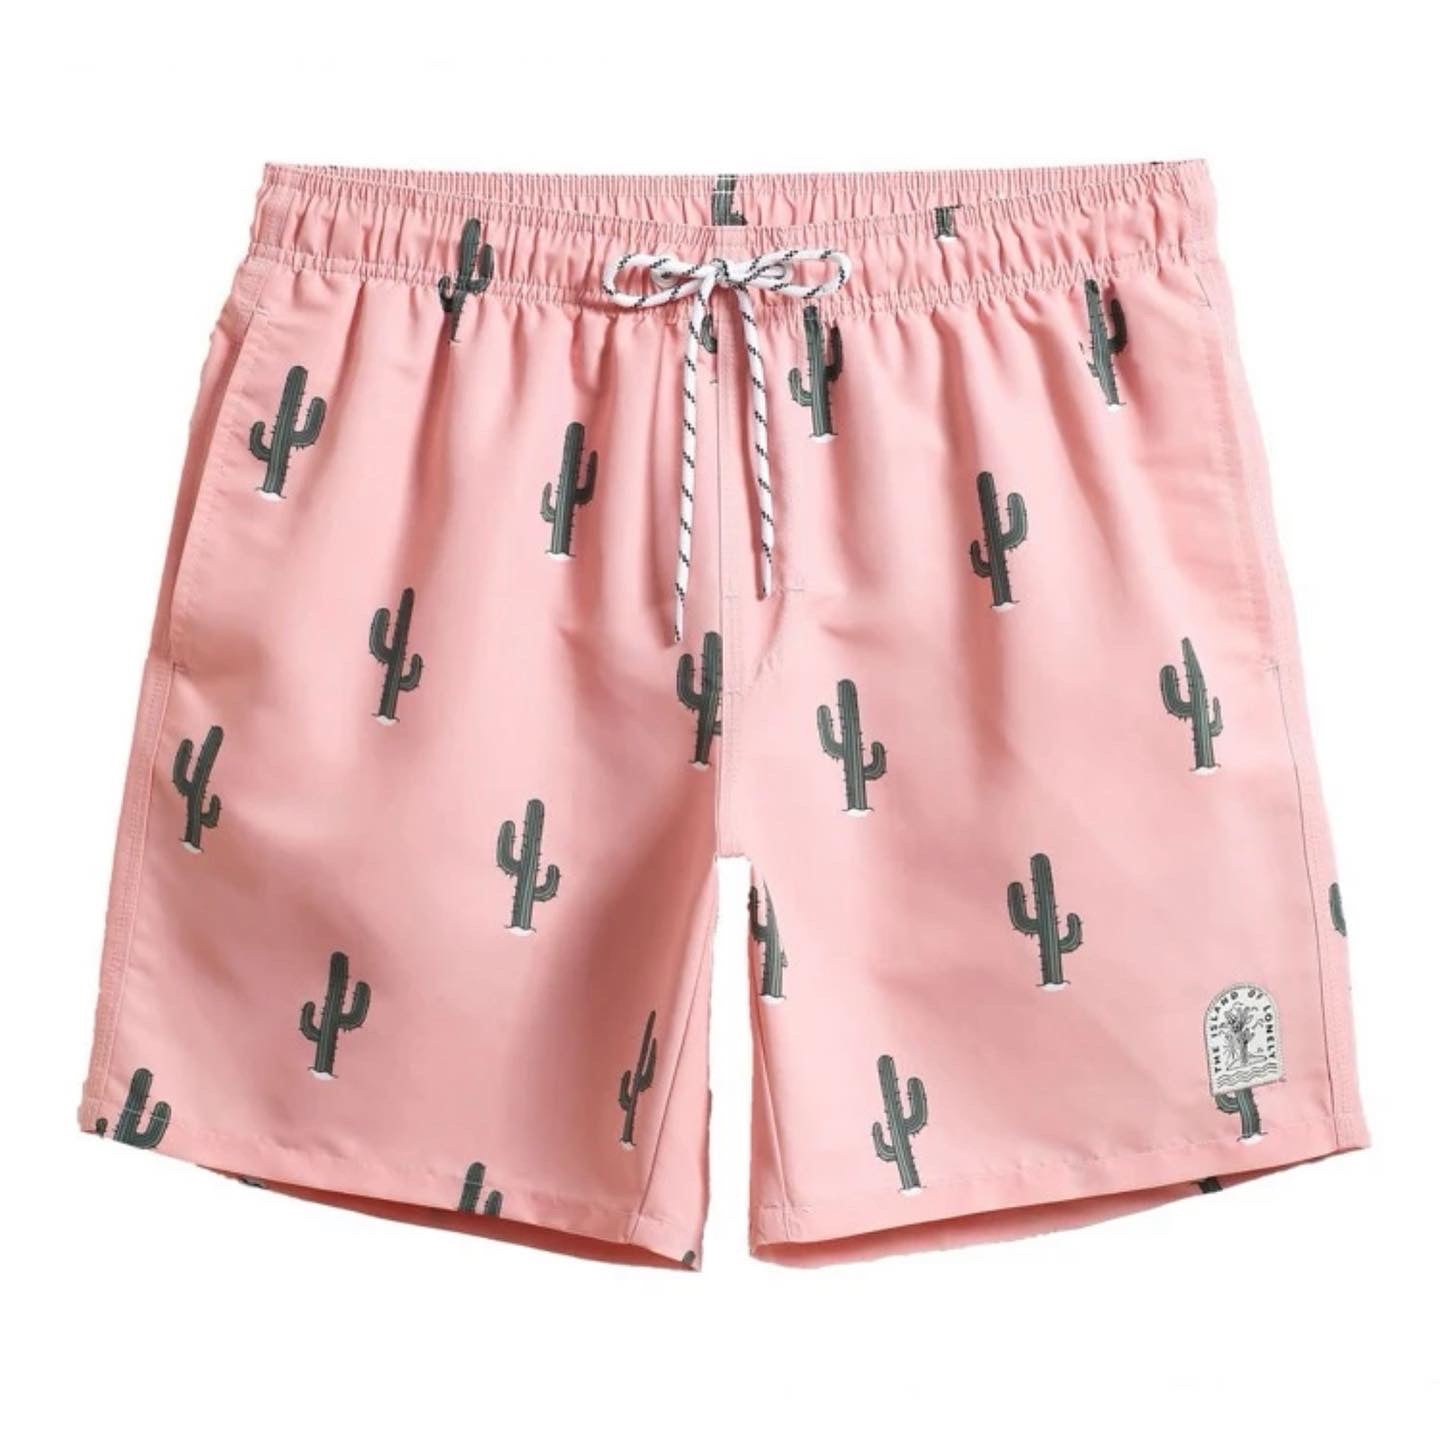 Cacti Board Shorts - Pink